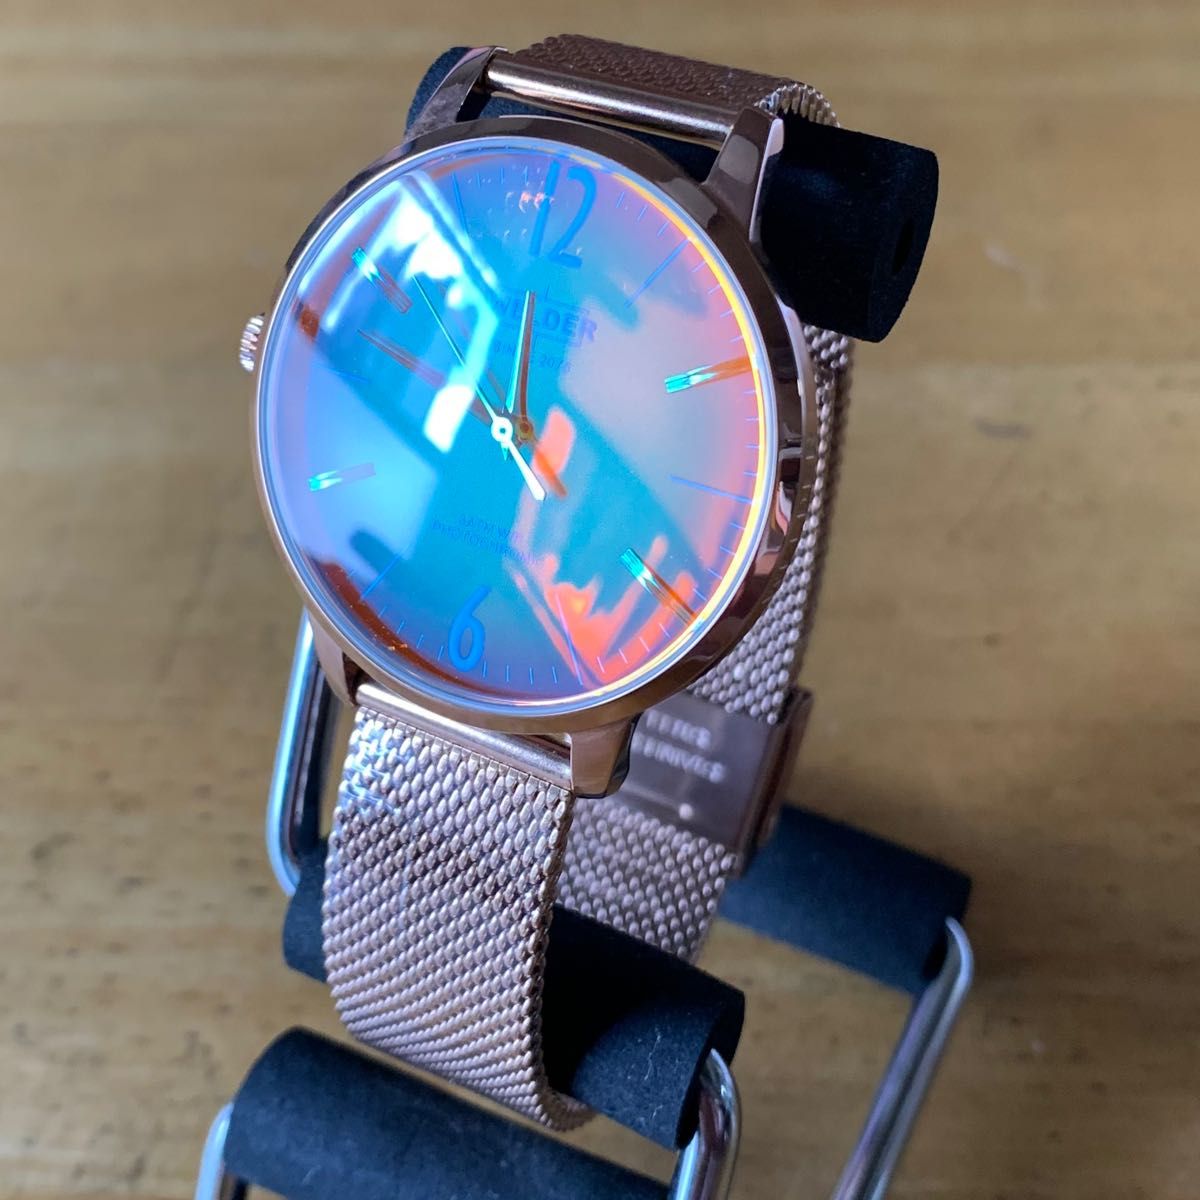 ウェルダー WELDER メンズ 腕時計 WRS619 グリーン - 時計